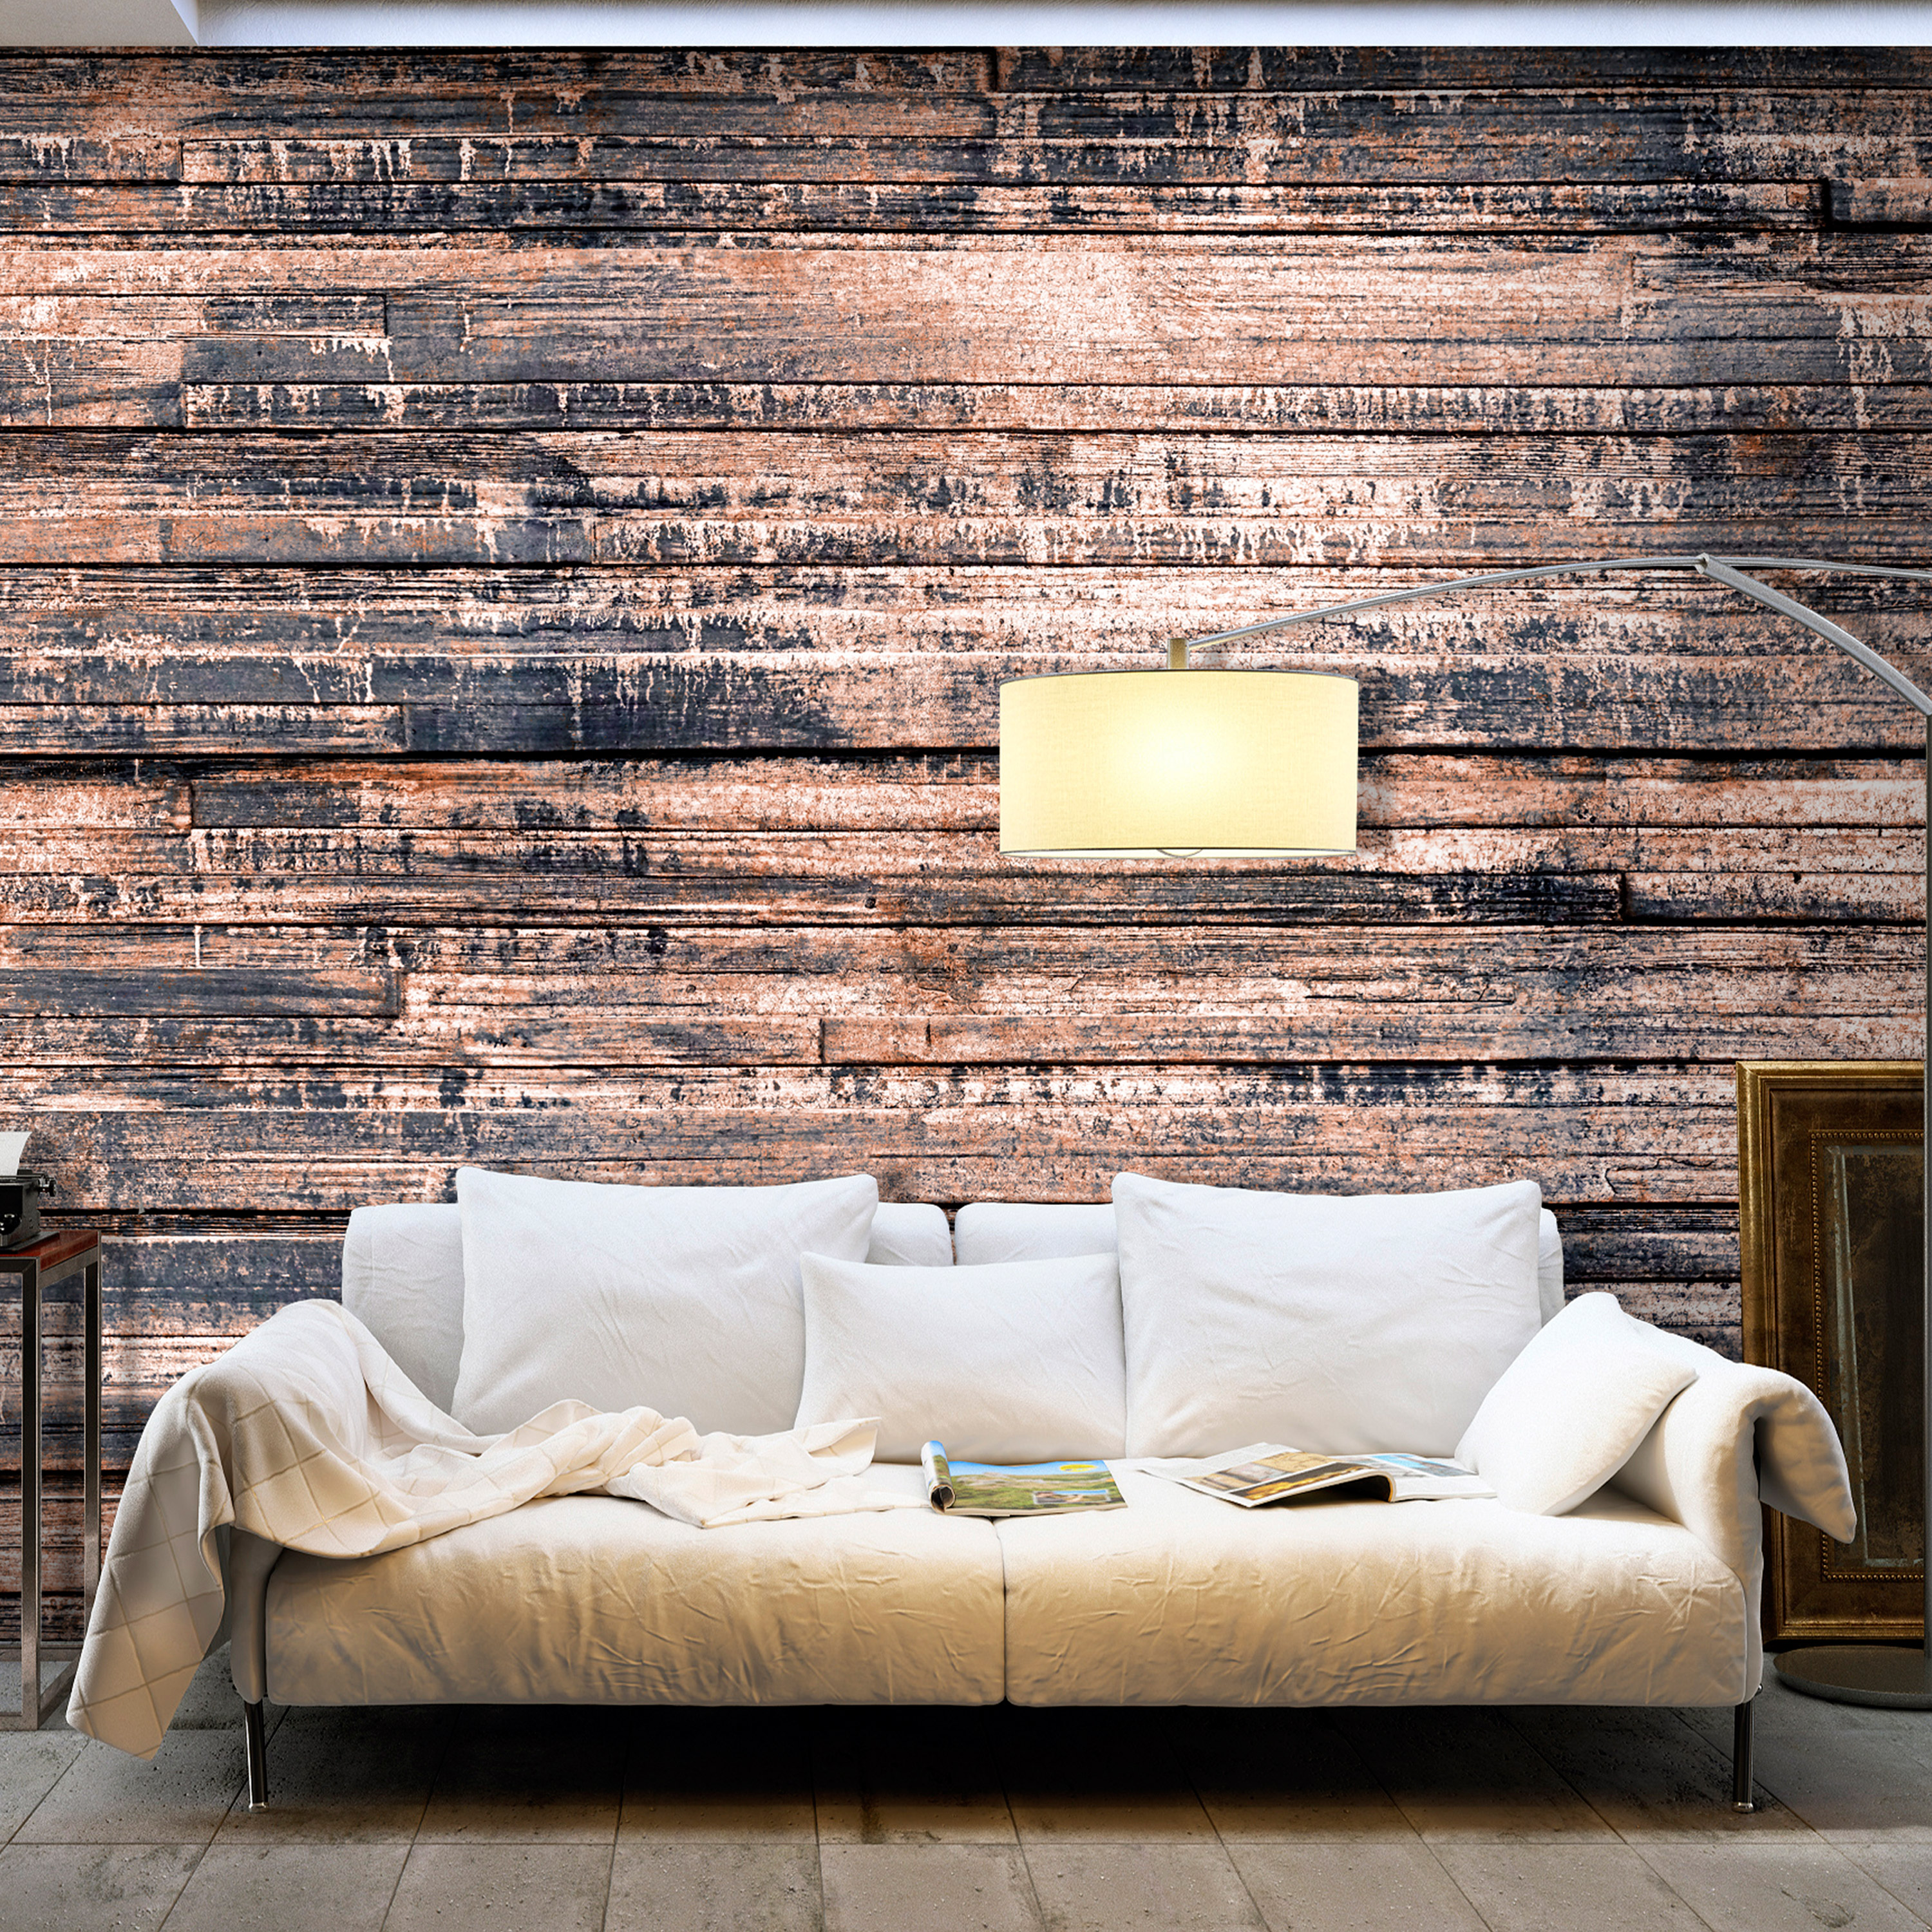 Self-adhesive Wallpaper - Burnt Boards - 343x245